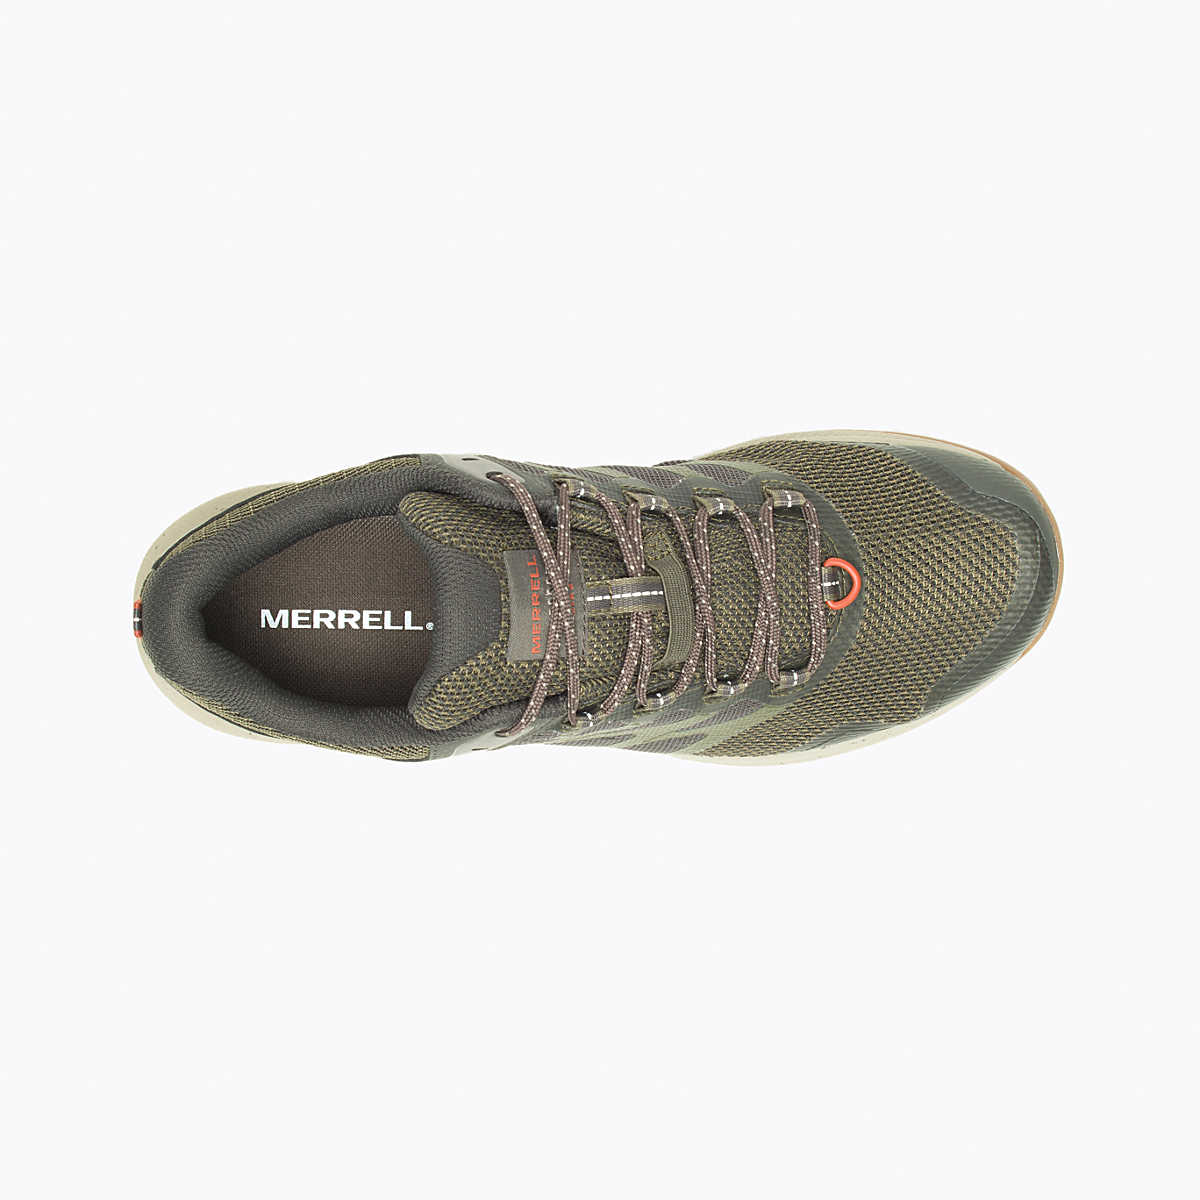 Merrell Men's Nova 3 GTX Trail Shoe Olive